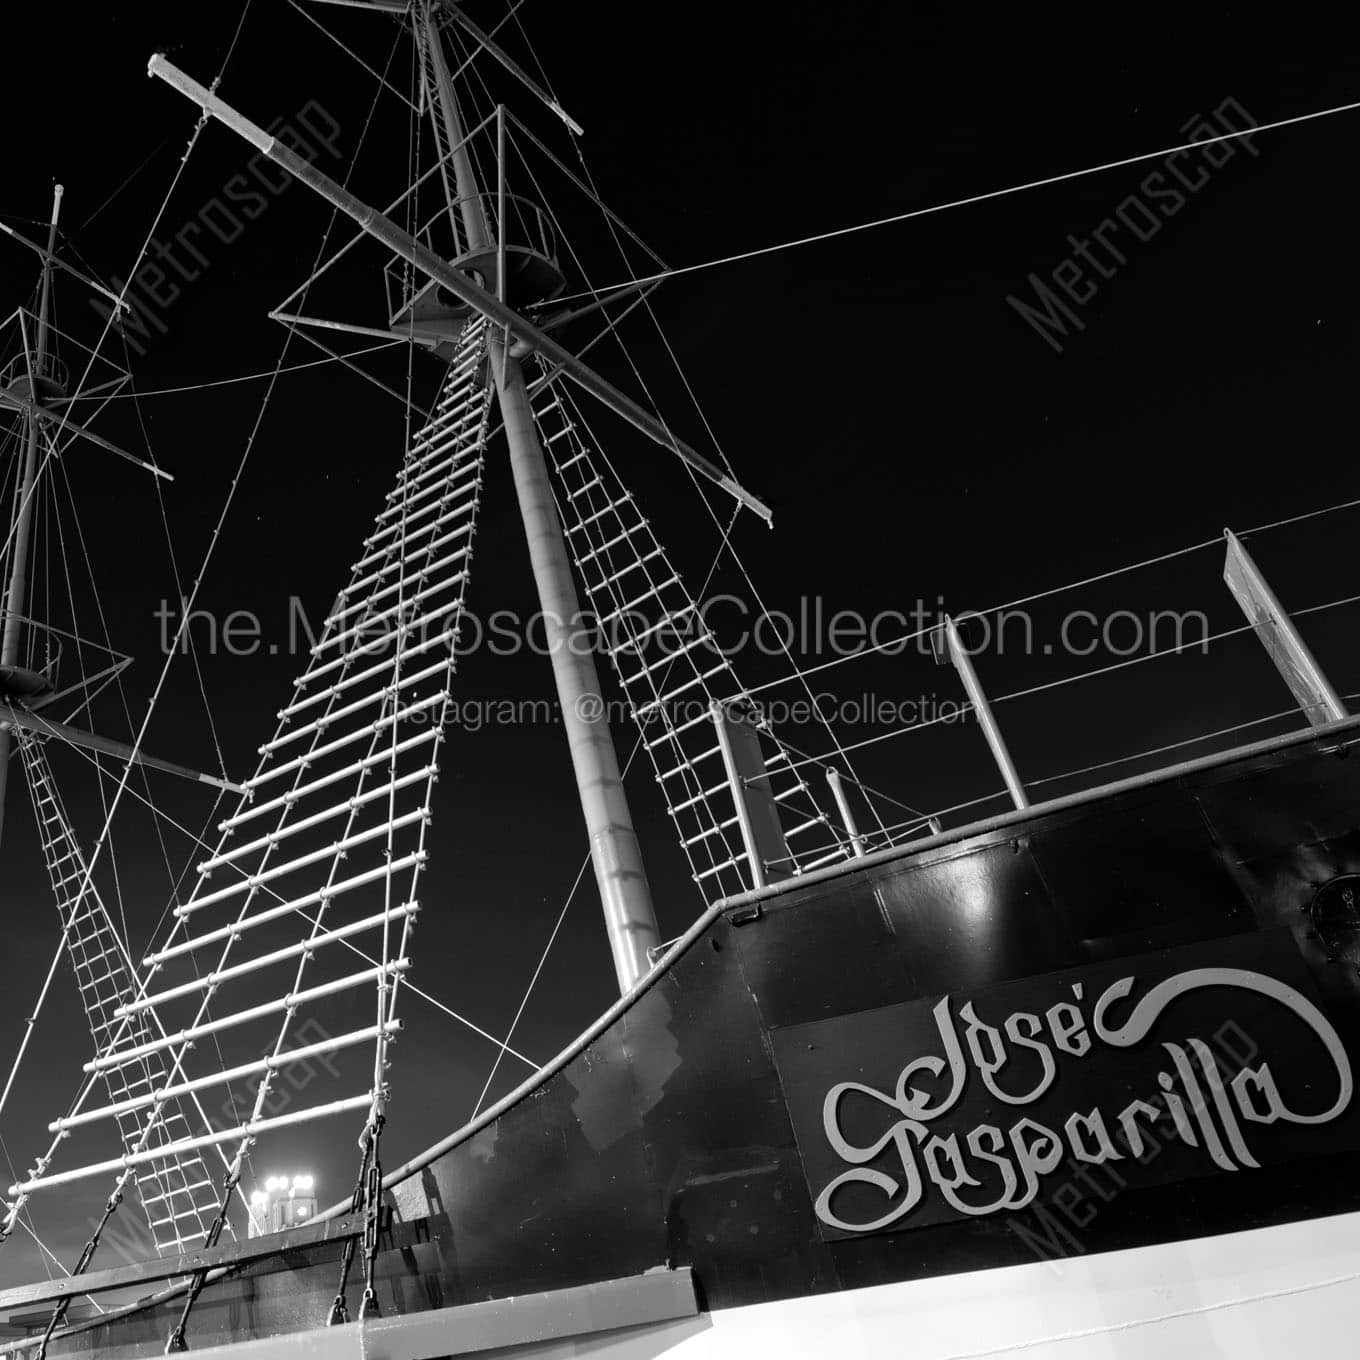 jose gasparilla pirate ship Black & White Office Art